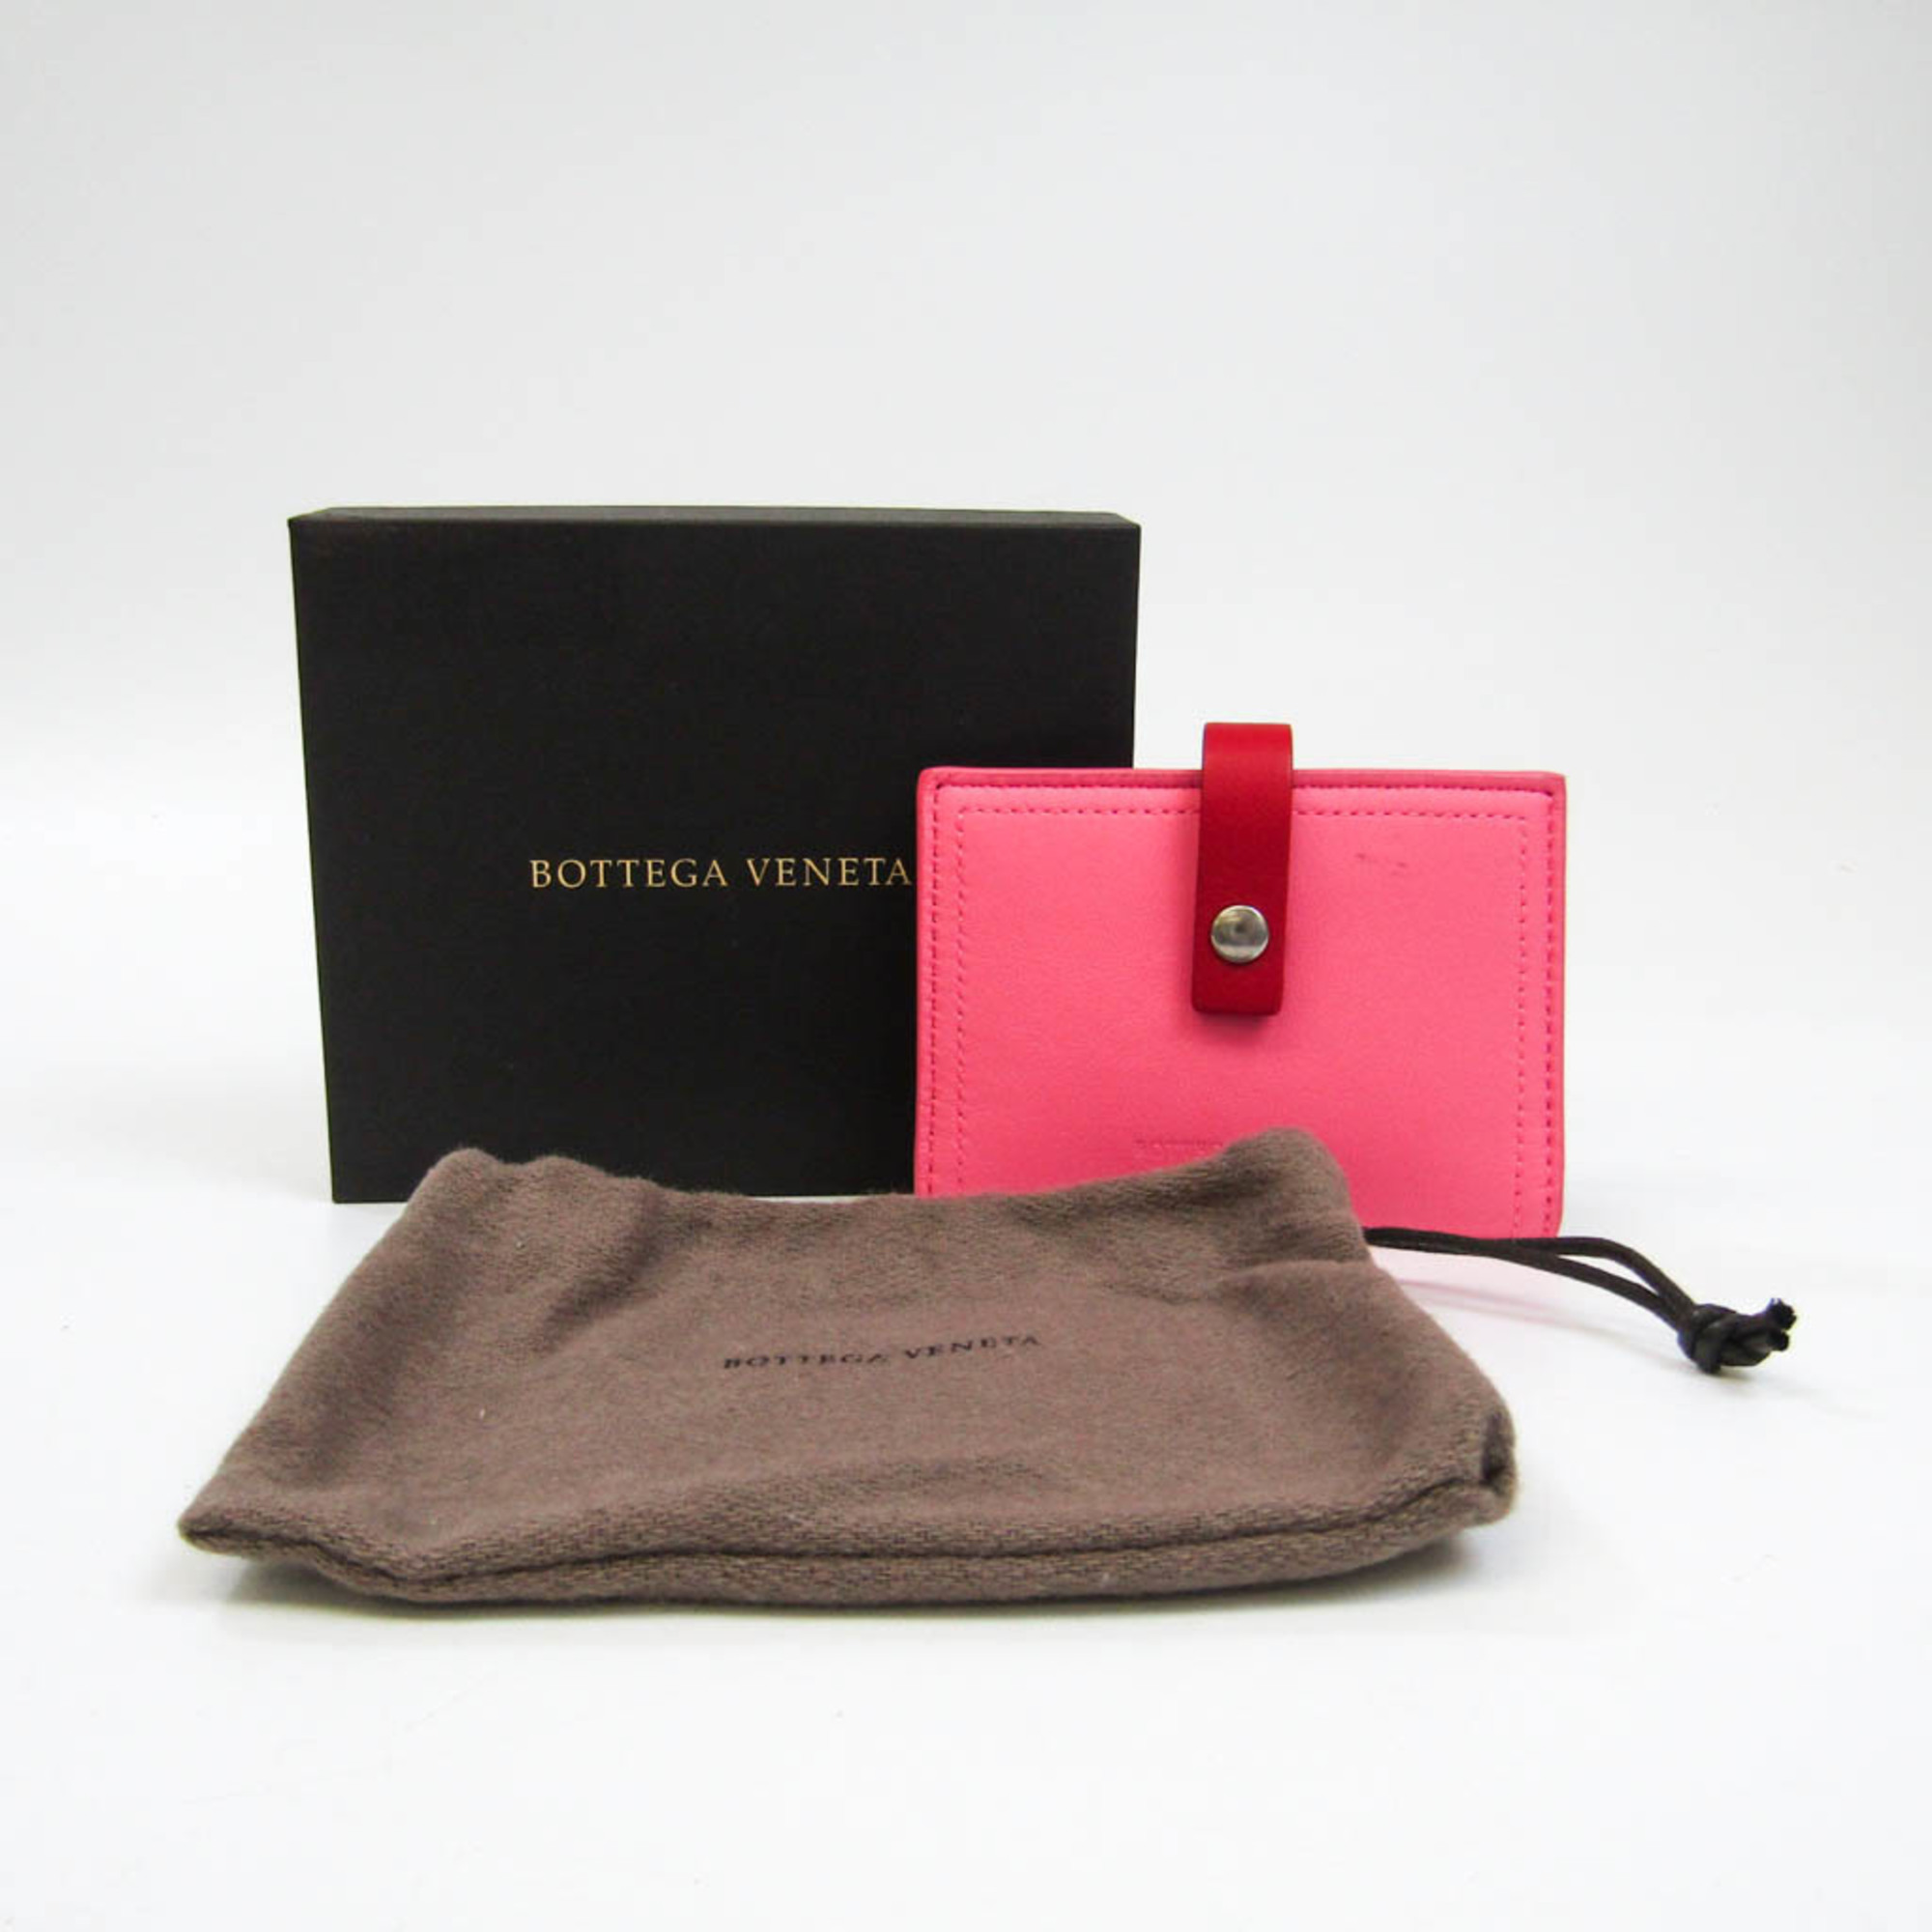 Bottega Veneta Leather Card Case Pink,Red Color